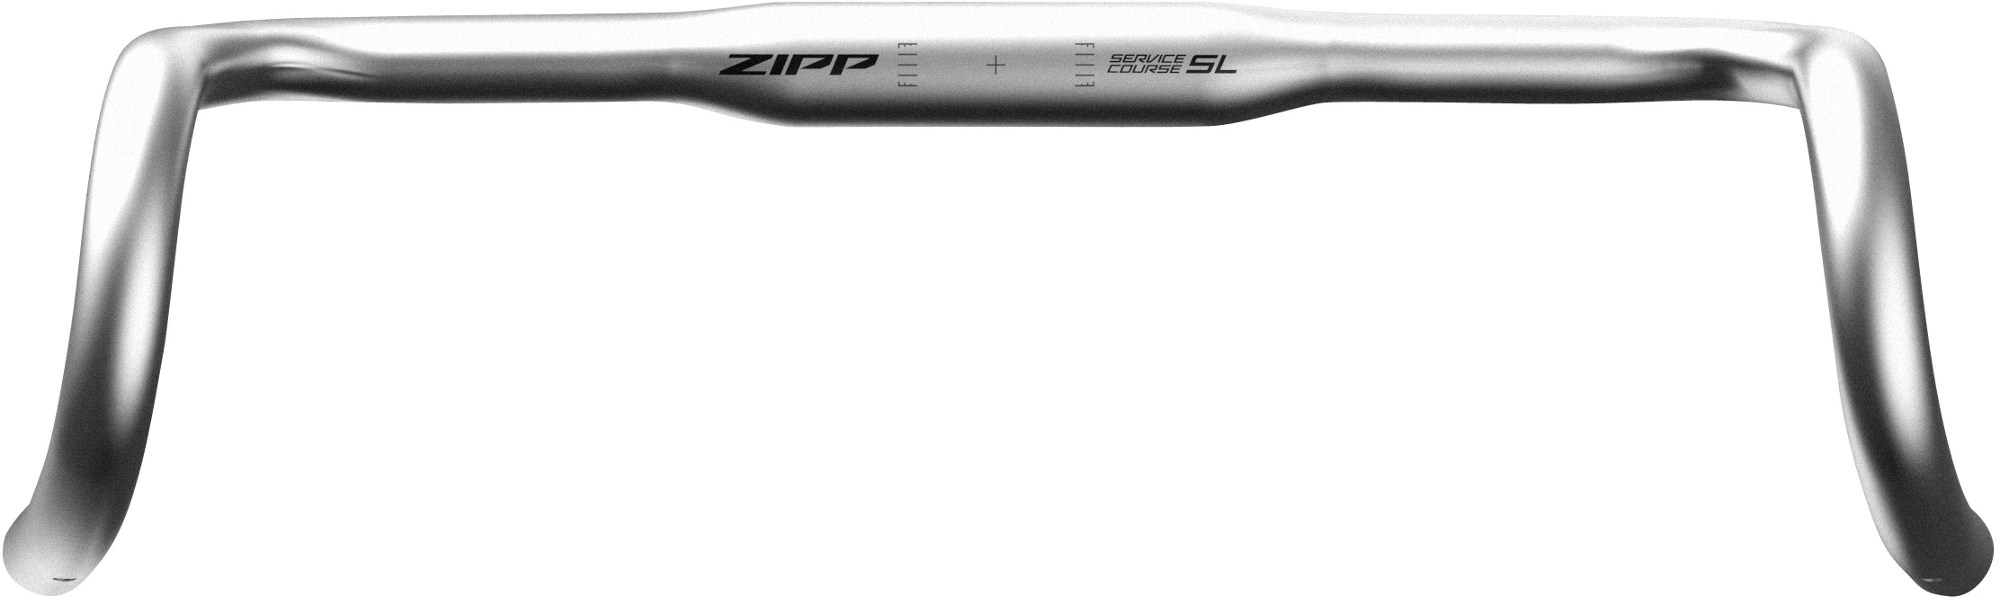 Курс обслуживания 70 Откидной руль XPLR Zipp, серый аэро руль sl 70 zipp черный